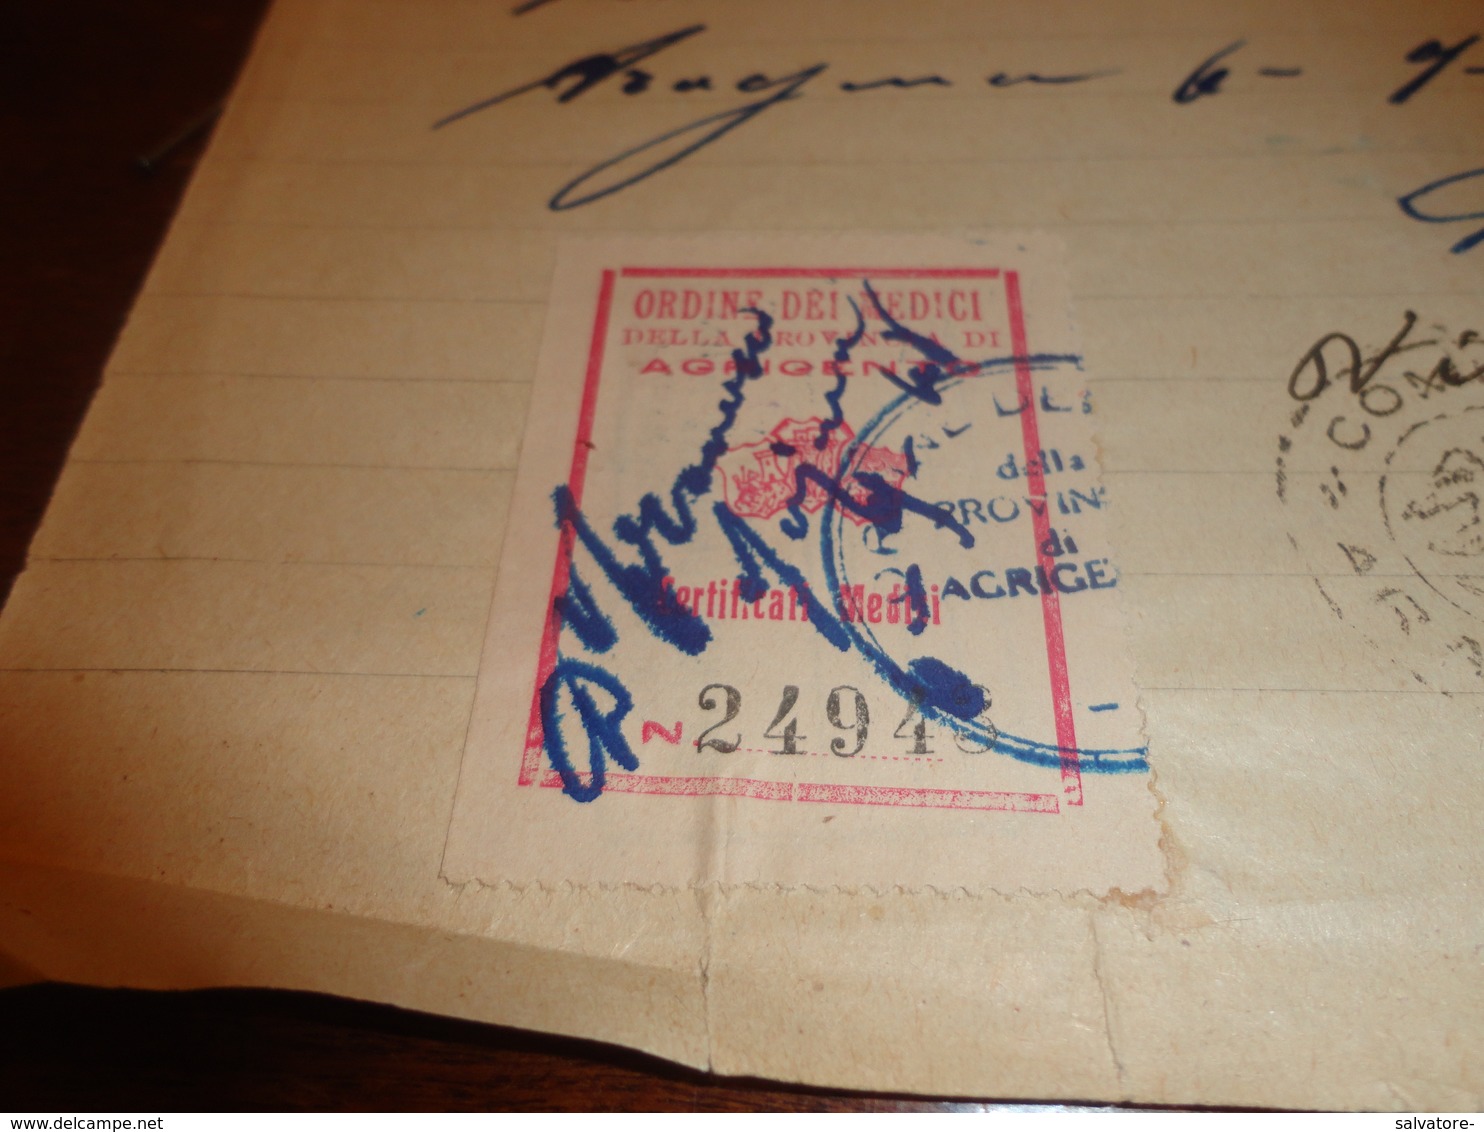 MARCA DA BOLLO ORDINE DEI MEDICI DELLA PROVINCIA DI AGRIGENTO CERTIFICATI MEDICI-1948 - Revenue Stamps